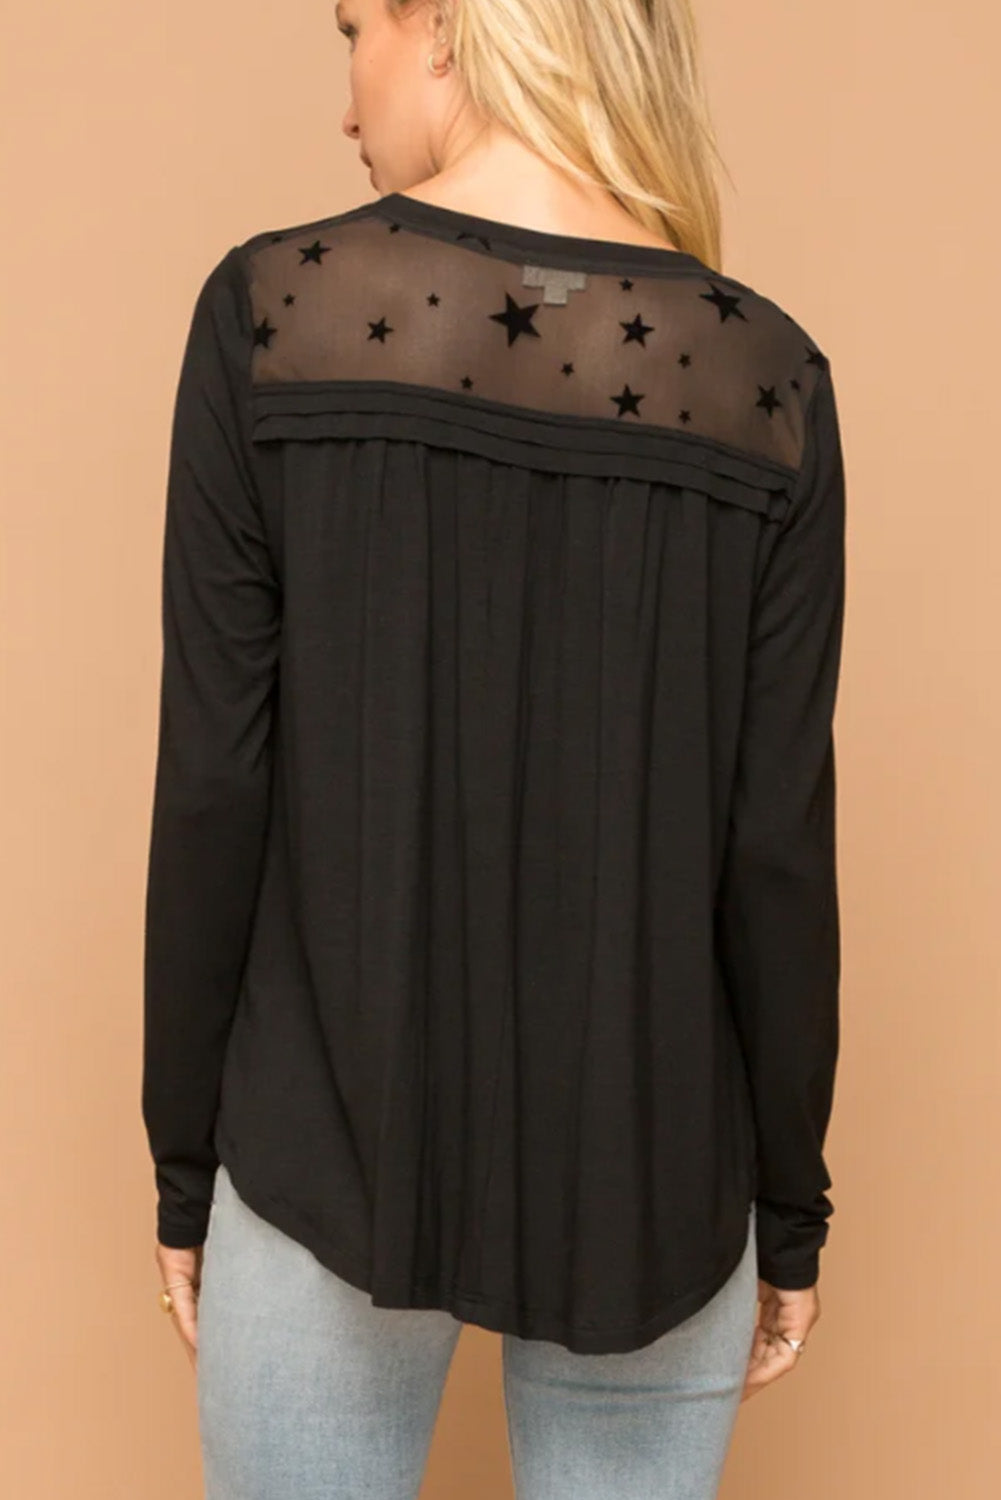 Schwarze Bluse mit Stern-Mesh-Einsatz und drapierten Details